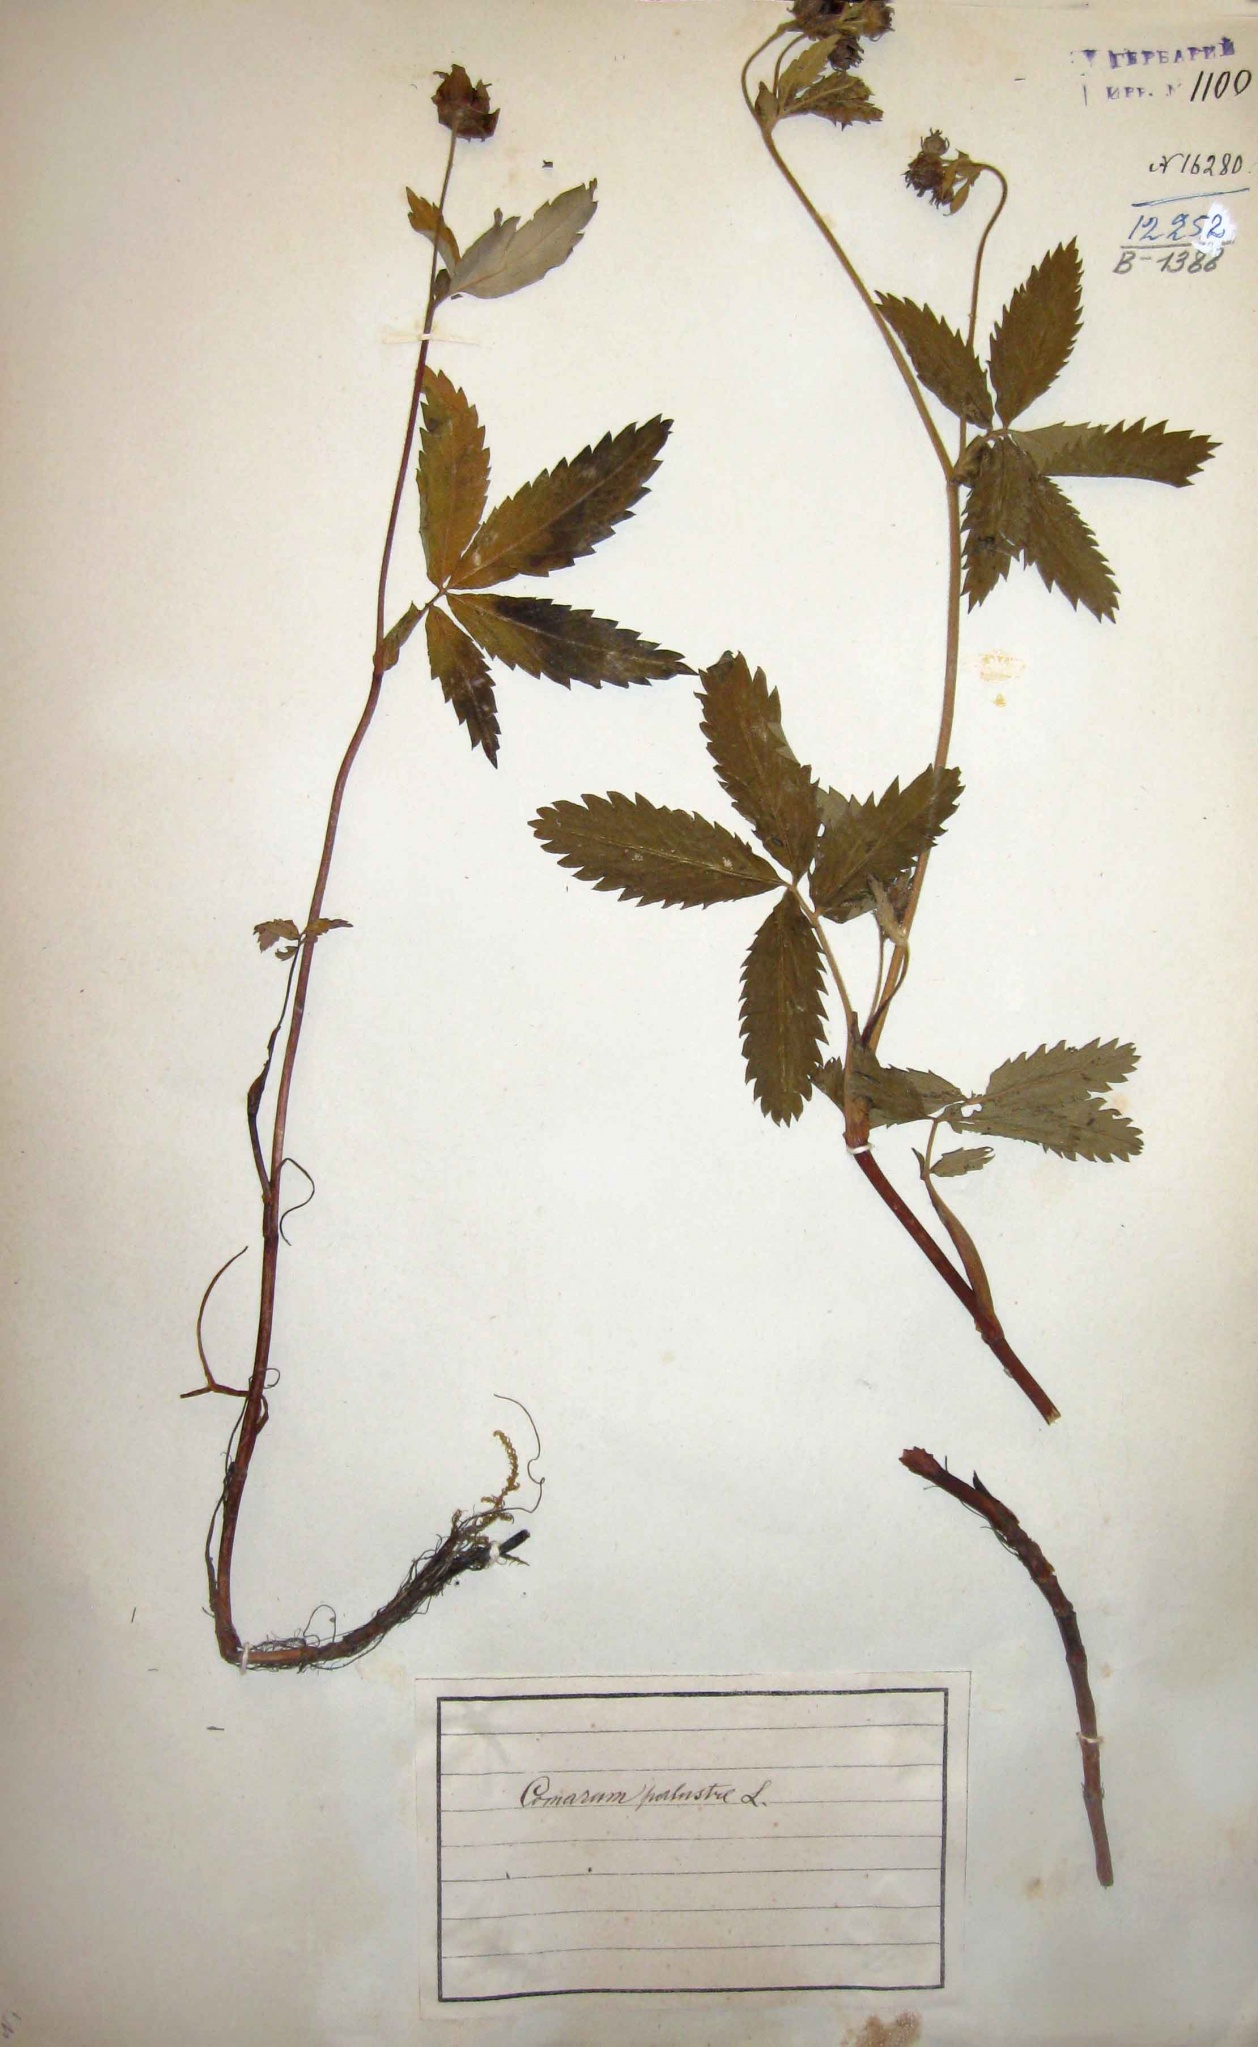 Сабельник болотный (Comarum palustre) — широко распространен по переувлажненным местам и болотам. Лекарственное растение.